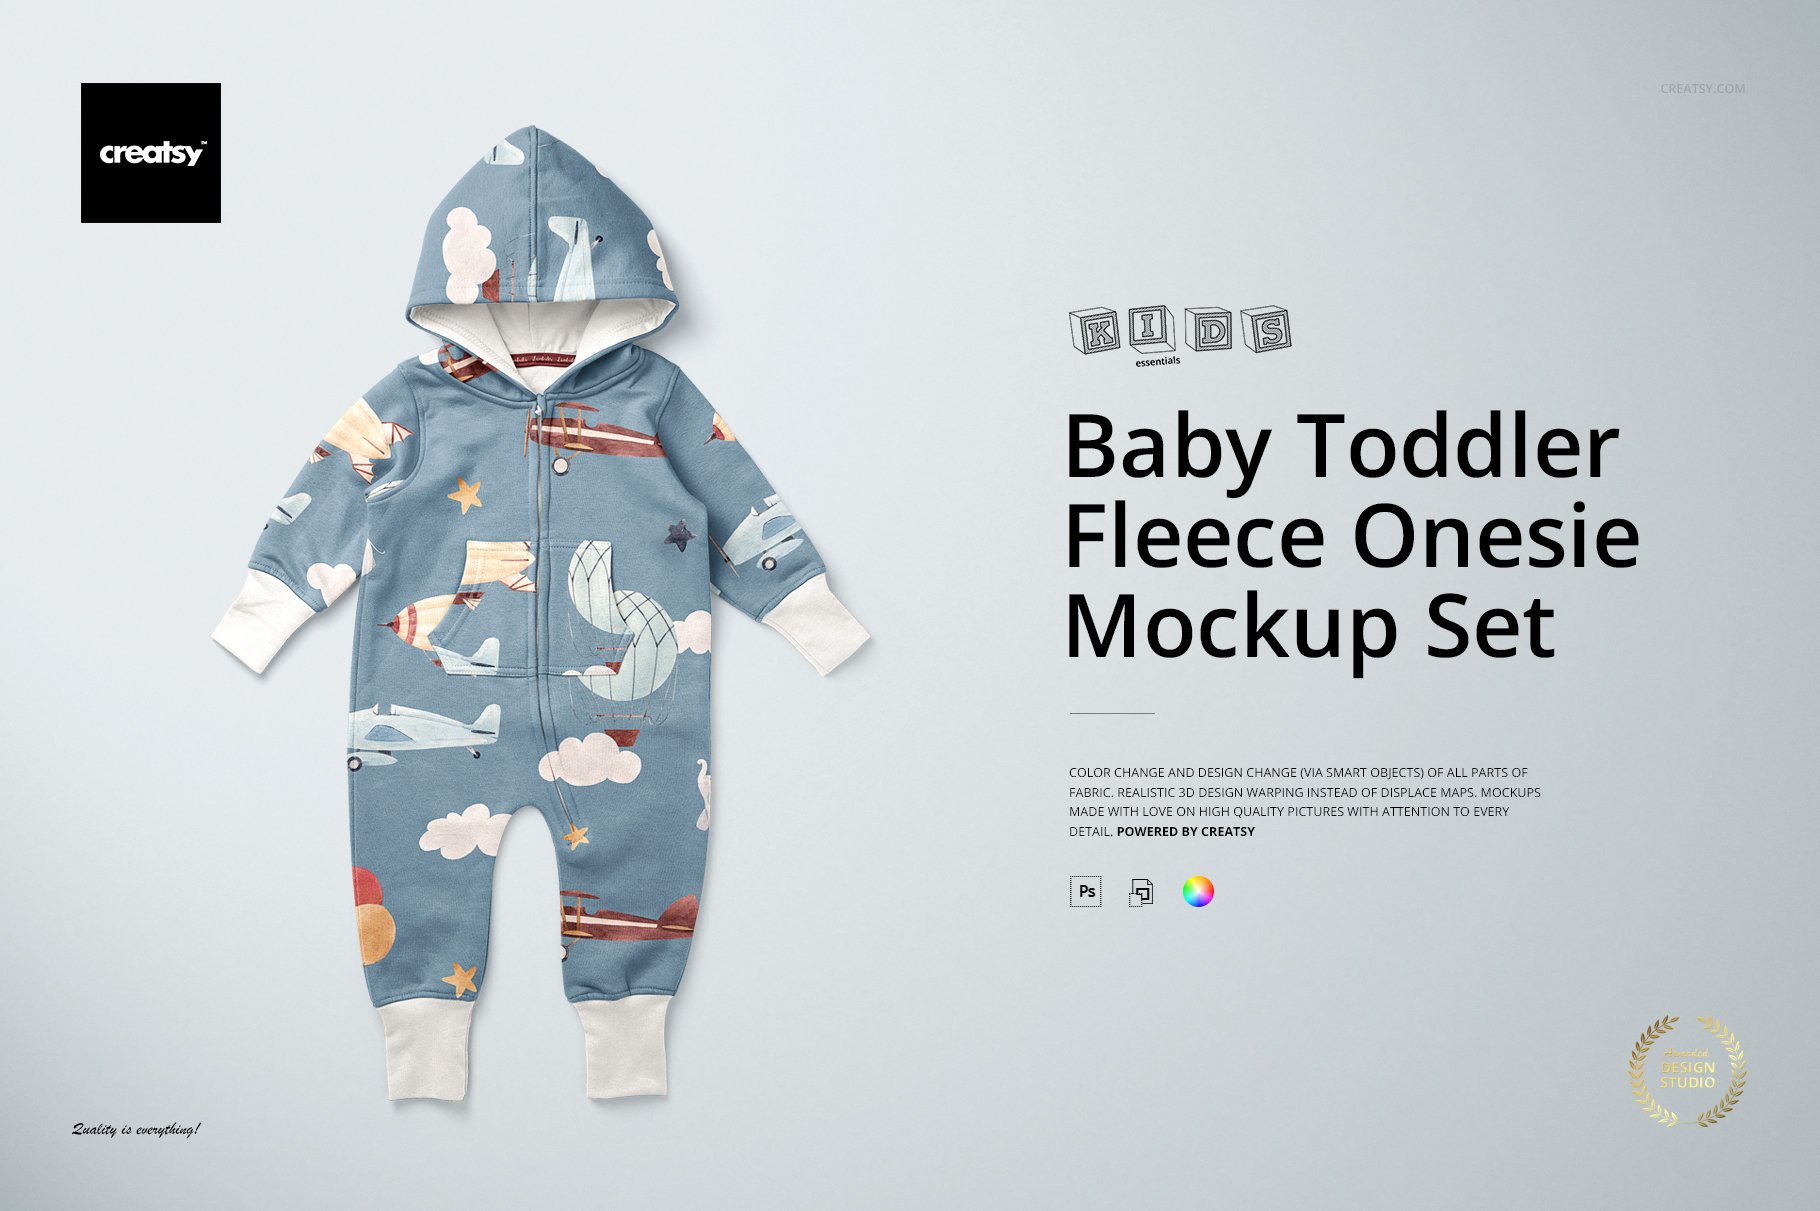 Baby Toddler Fleece Onesie Mockups cover image.